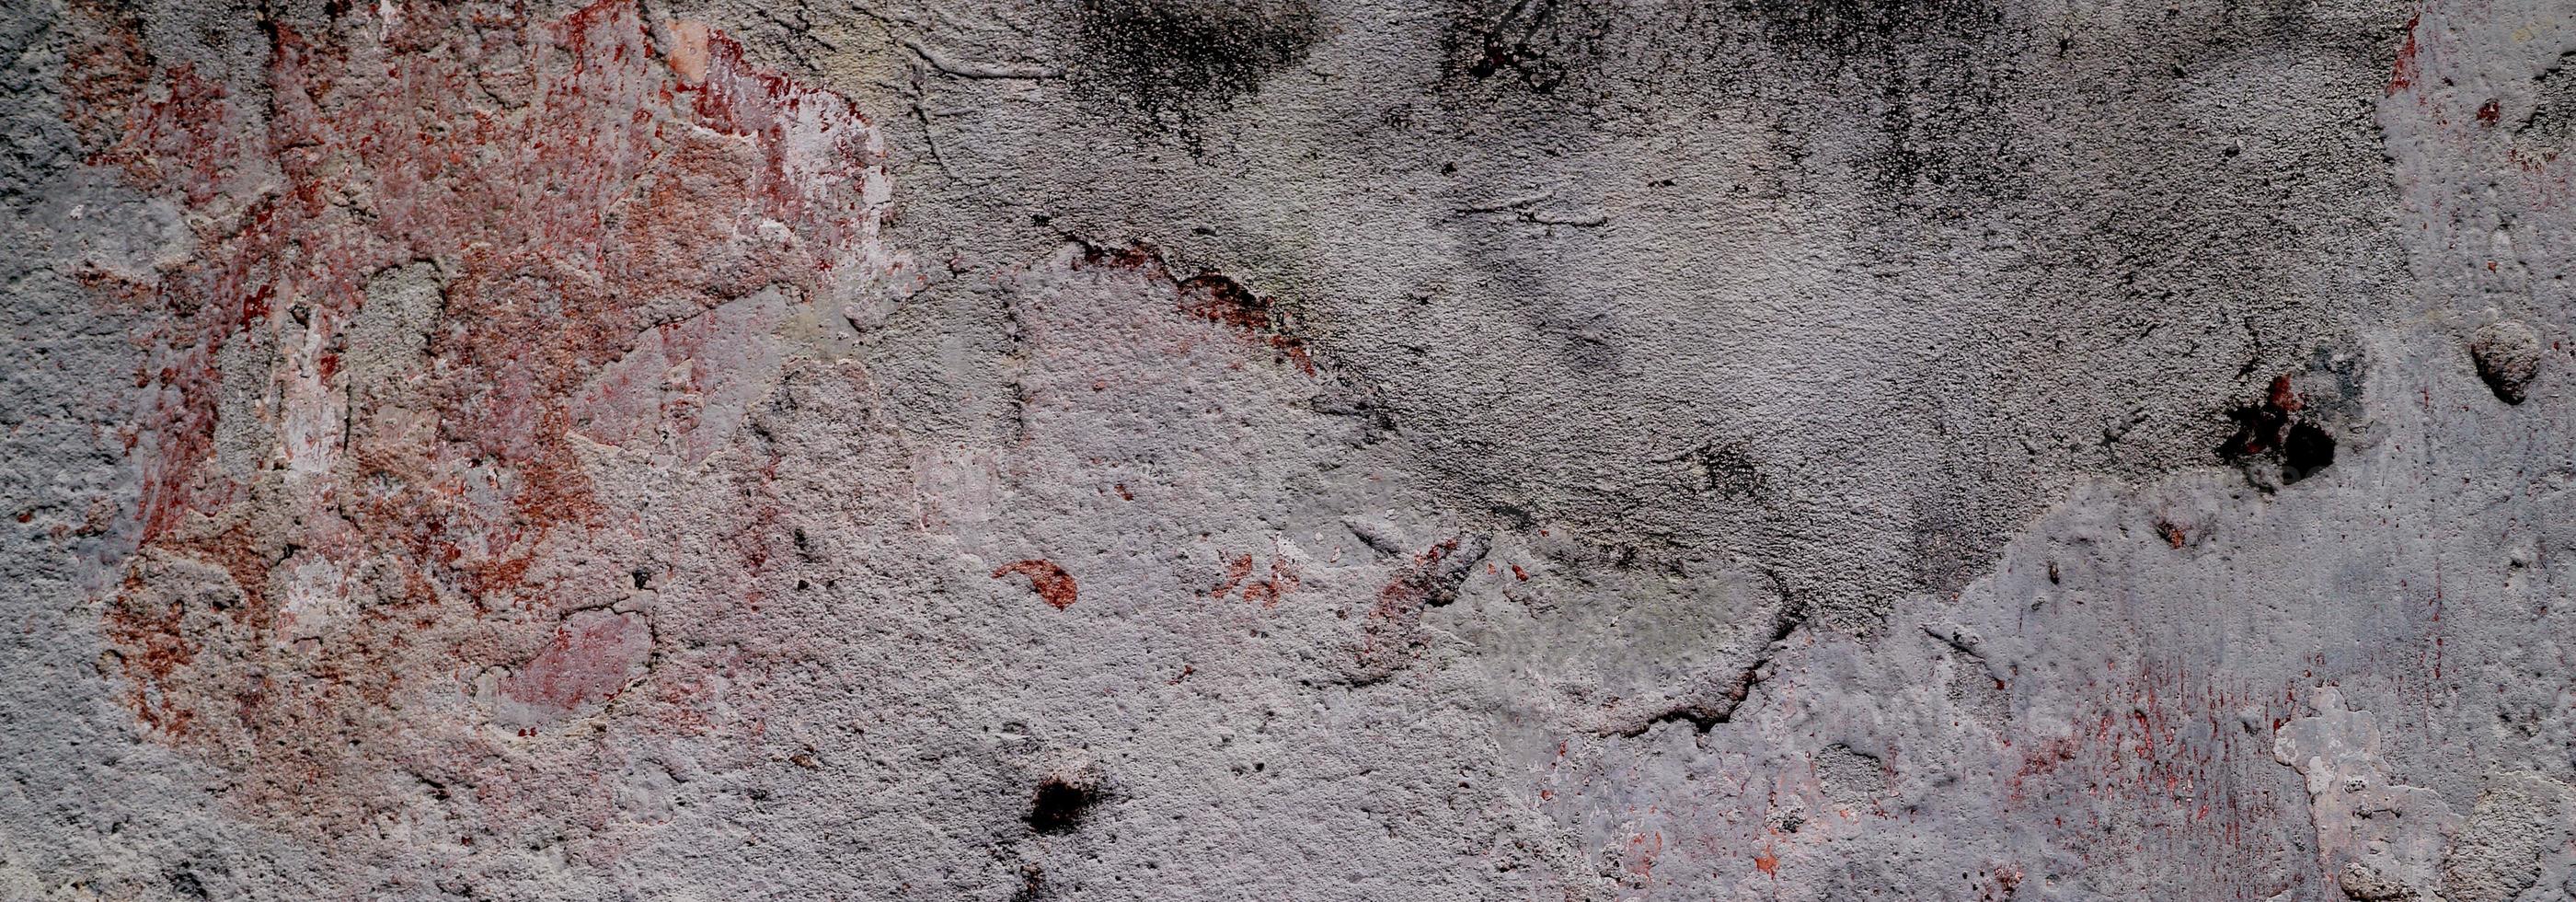 mur texturé avec du gris. texture de ciment en béton légèrement gris clair pour le fond. texture de peinture abstraite. photo